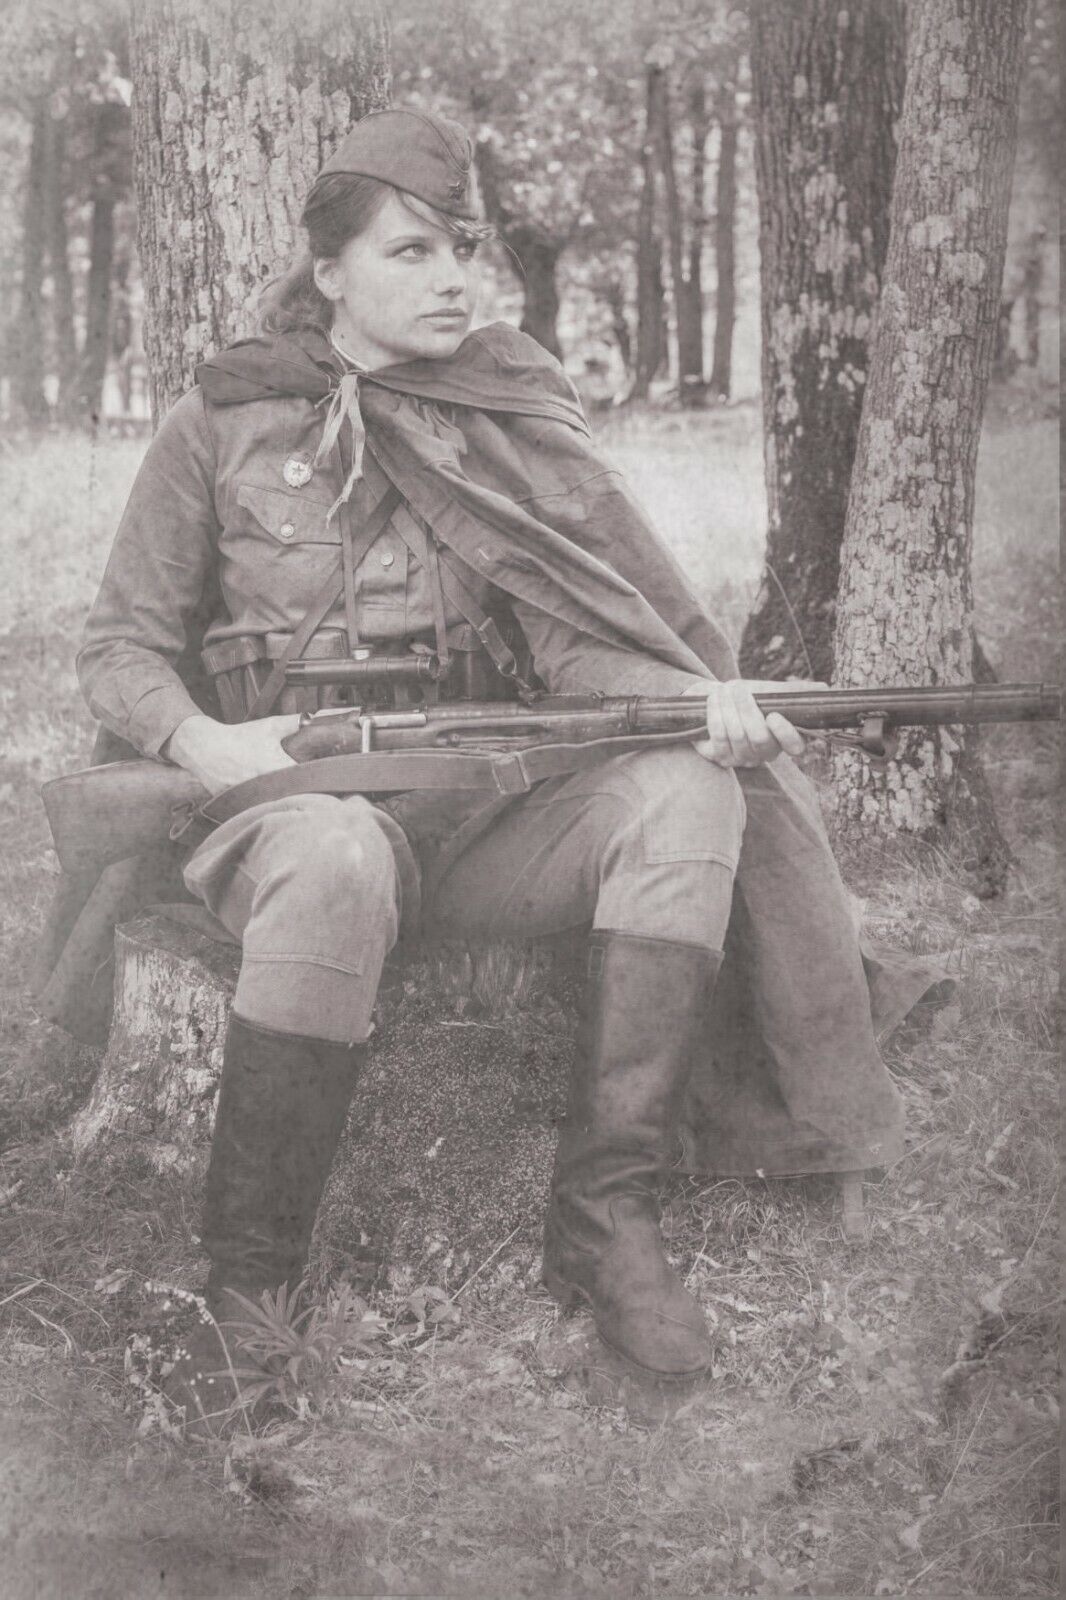 Soviet woman sniper in Uniform Rare Antique Soldier Old War Photo WW2 4x6 W